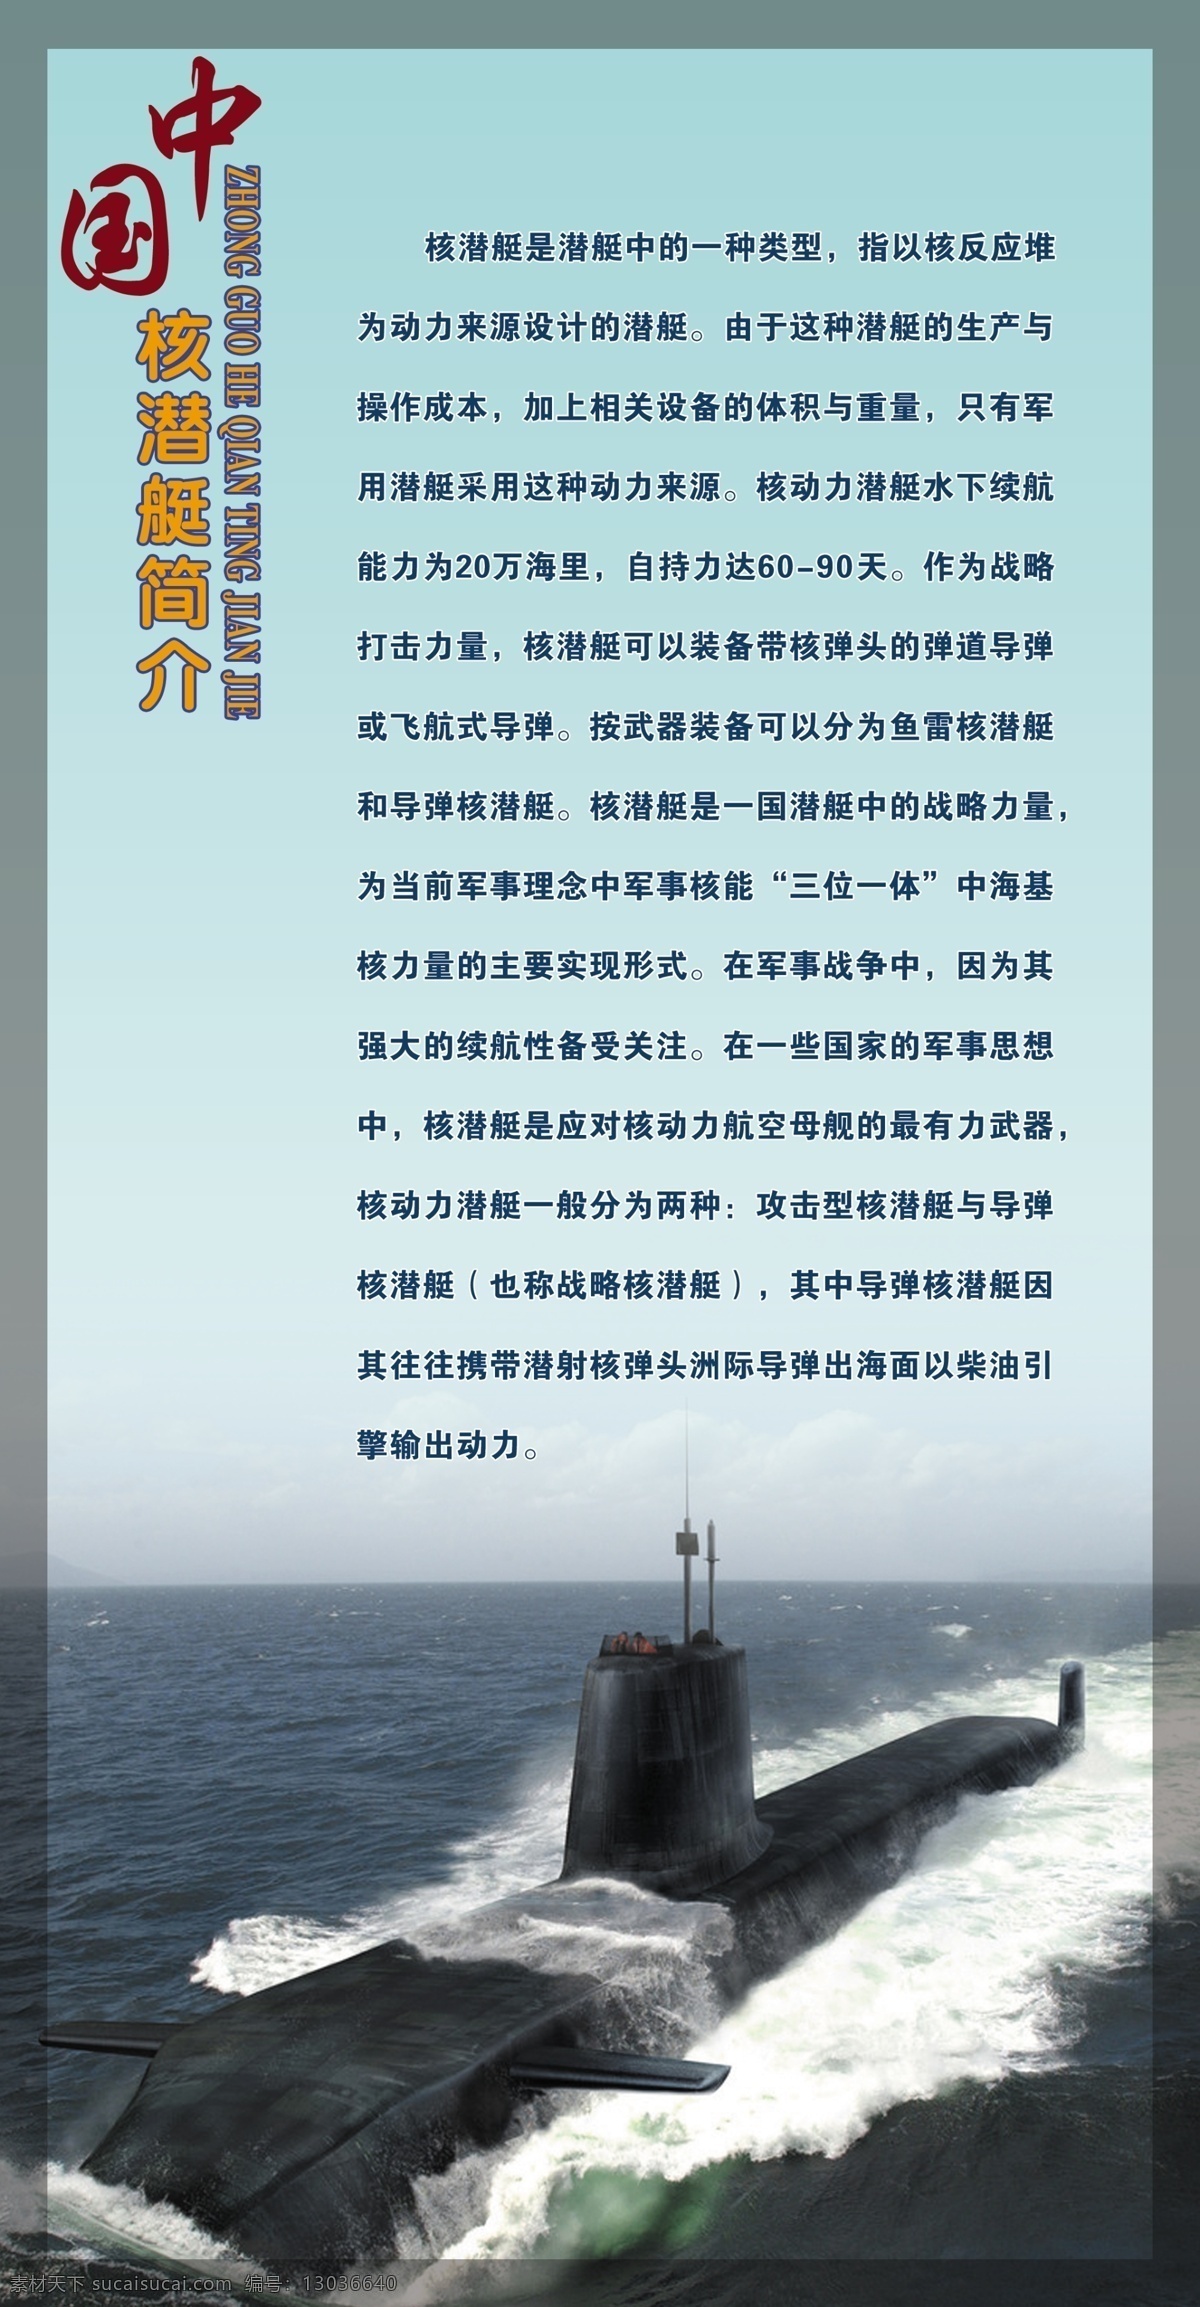 国防教育展板 军事 科技 潜艇 中国核潜艇 中国海上部队 国防教育 国防 潜艇简介 潜艇介绍 展板模板 广告设计模板 源文件